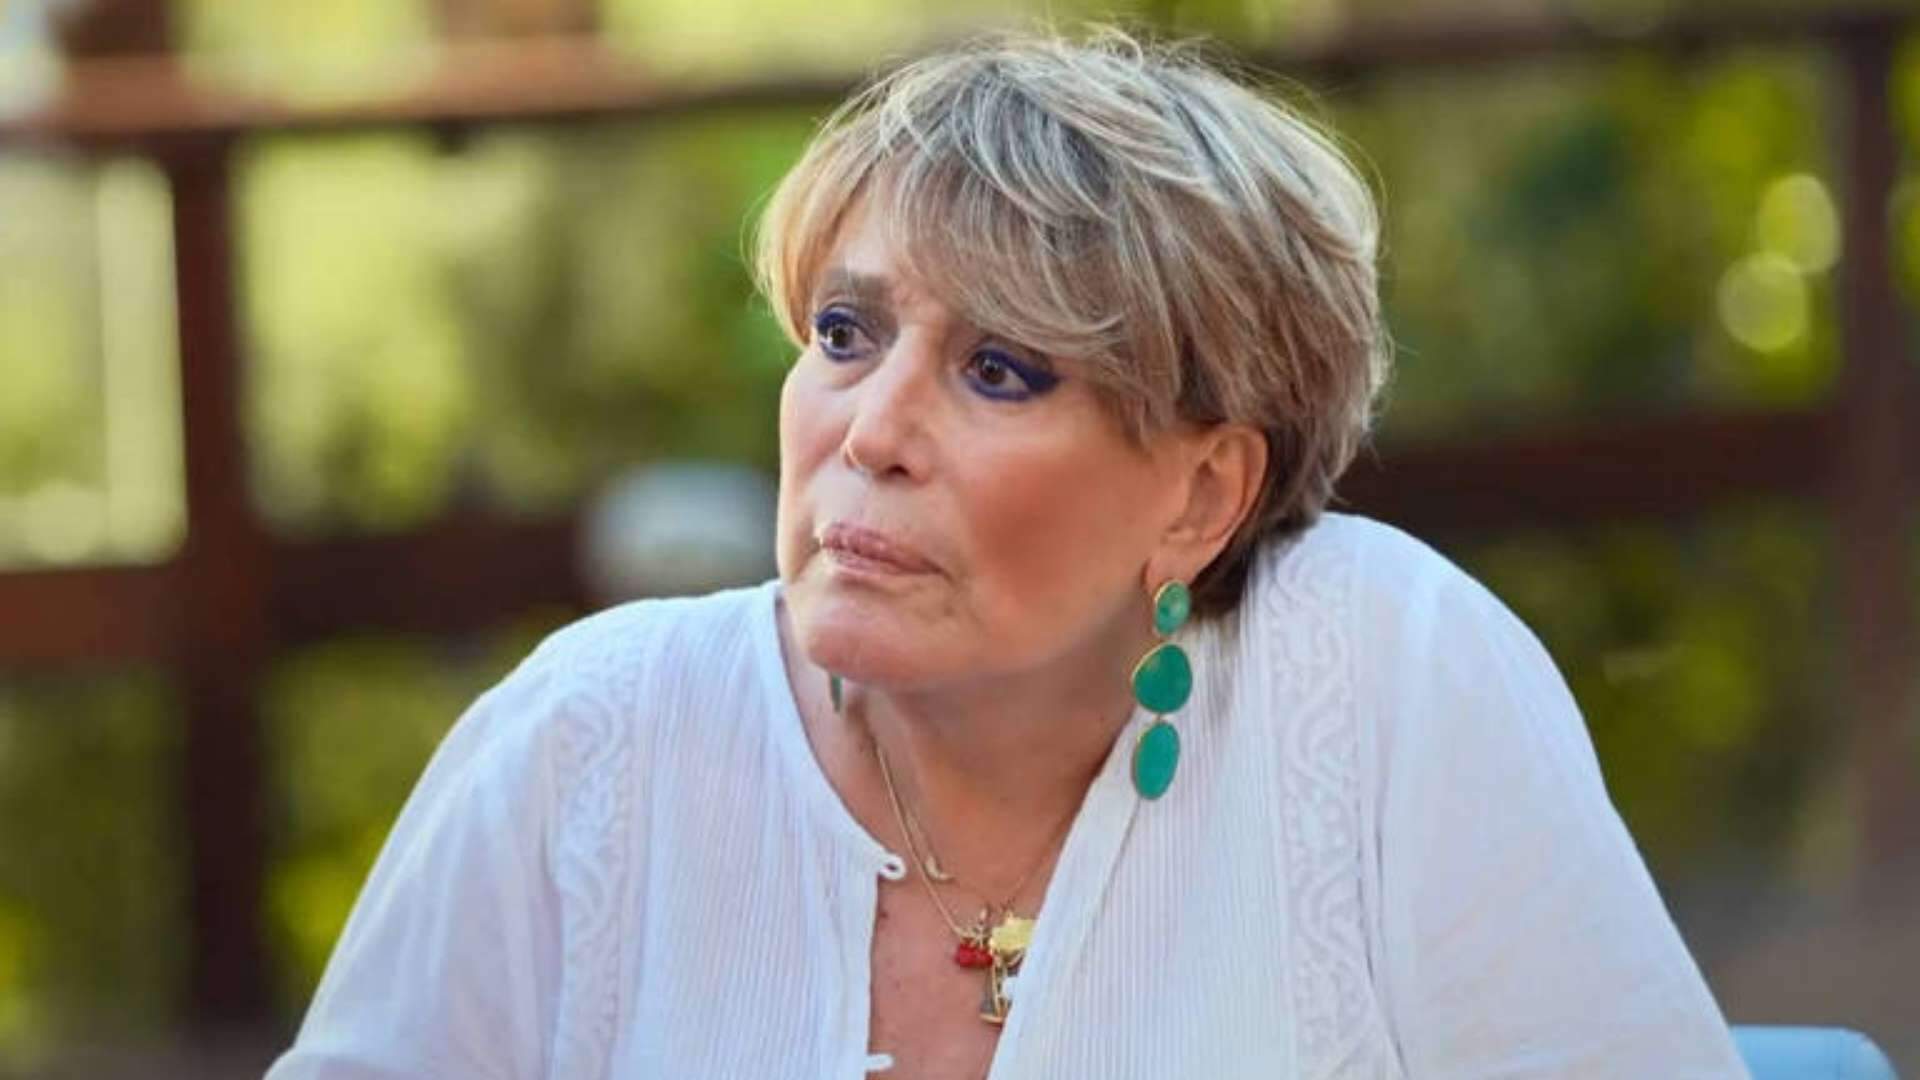 Vai deixar o Brasil? Susana Vieira expõe arrependimento e toma decisão: “A maior tristeza” - Metropolitana FM